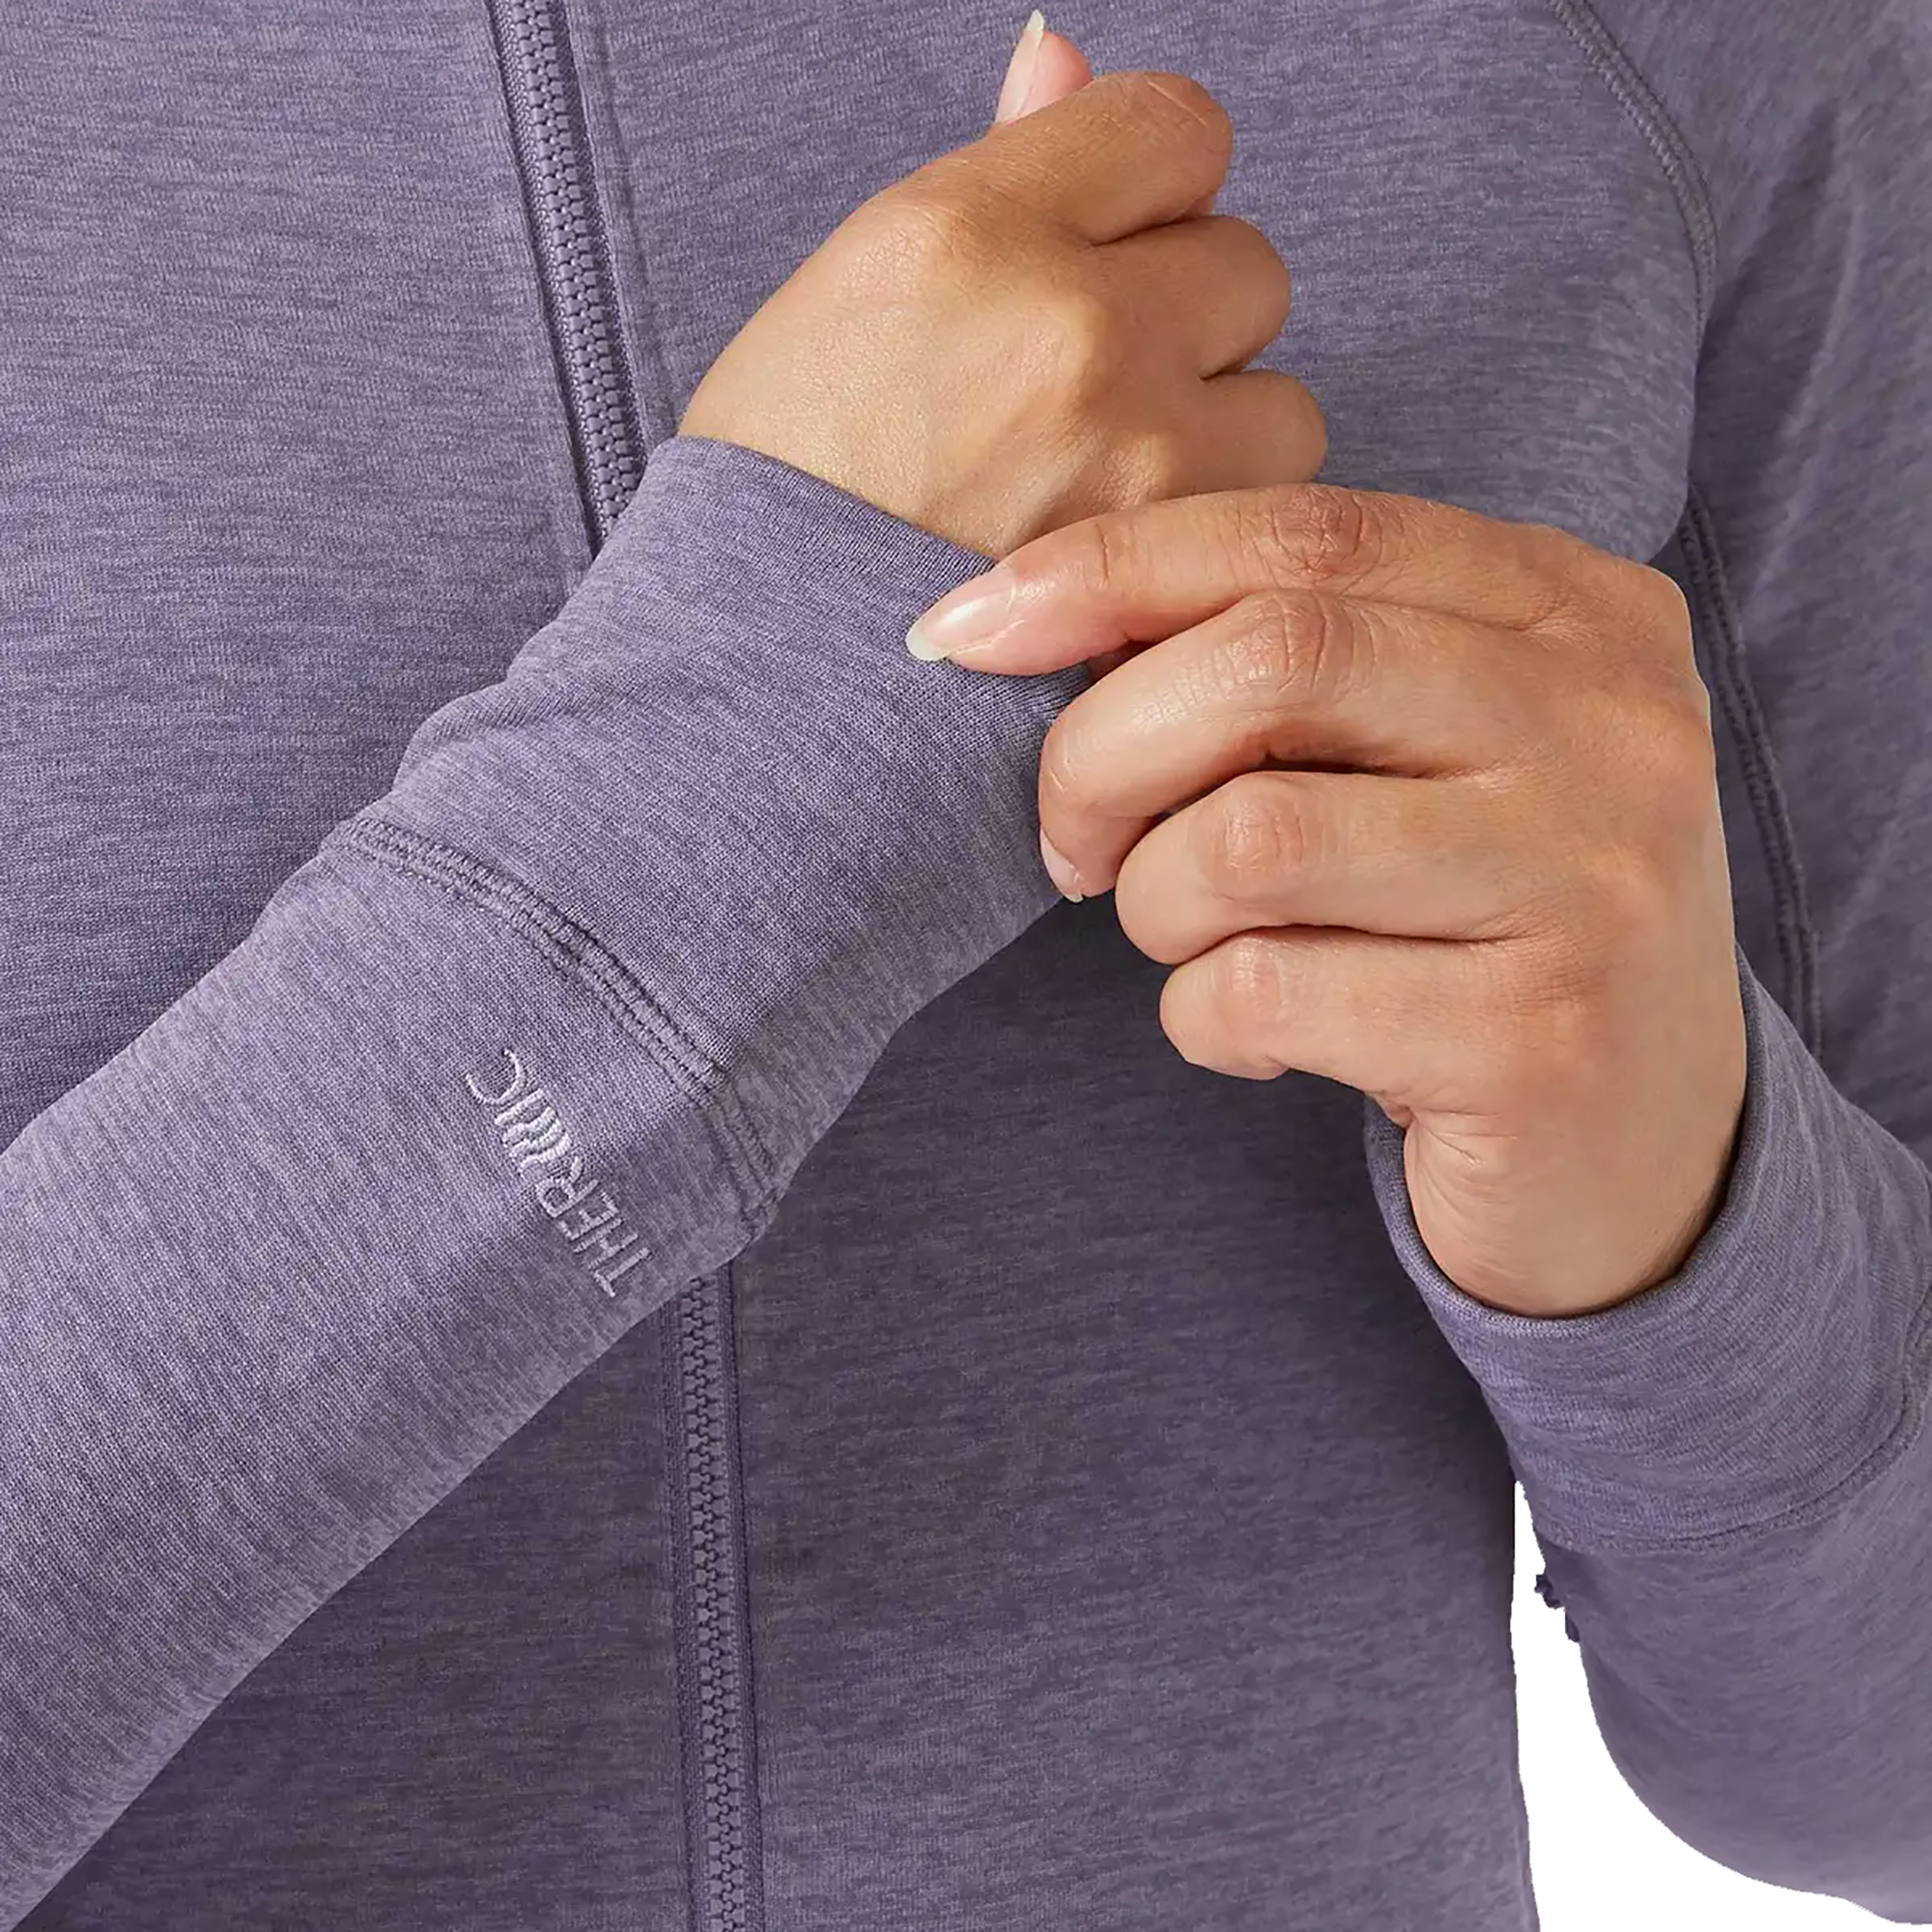 Rab Nexus Hoody Women's Technical Zipped Fleece